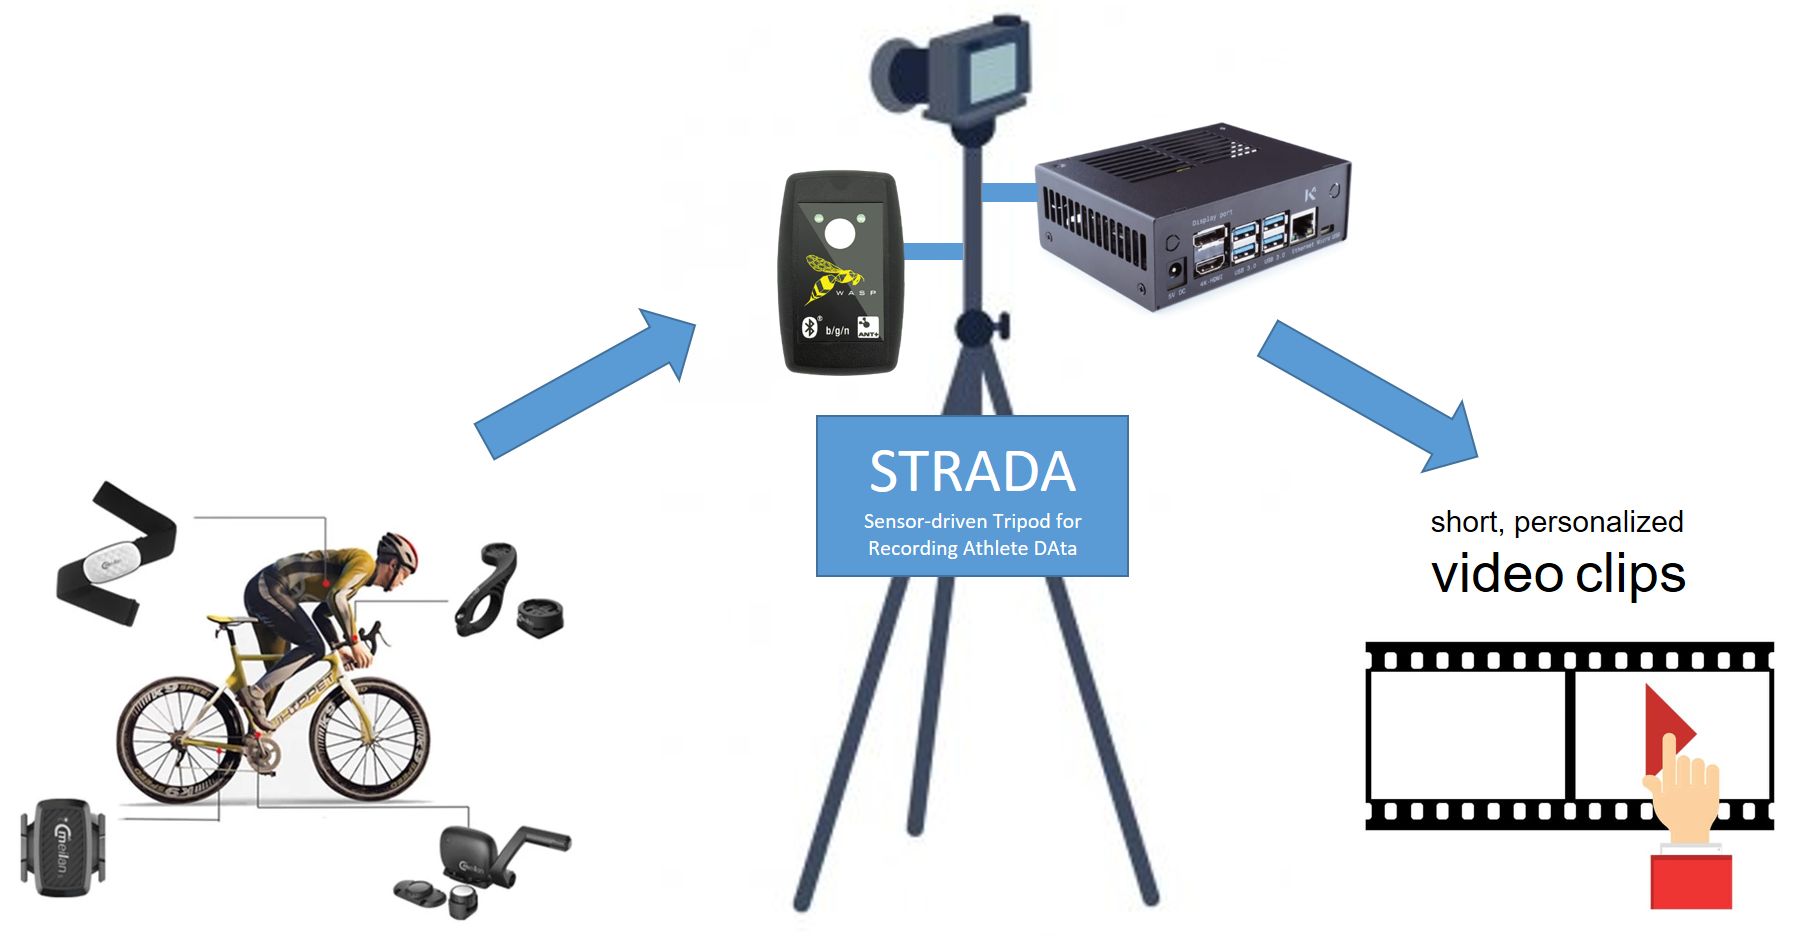 STRADA schematic